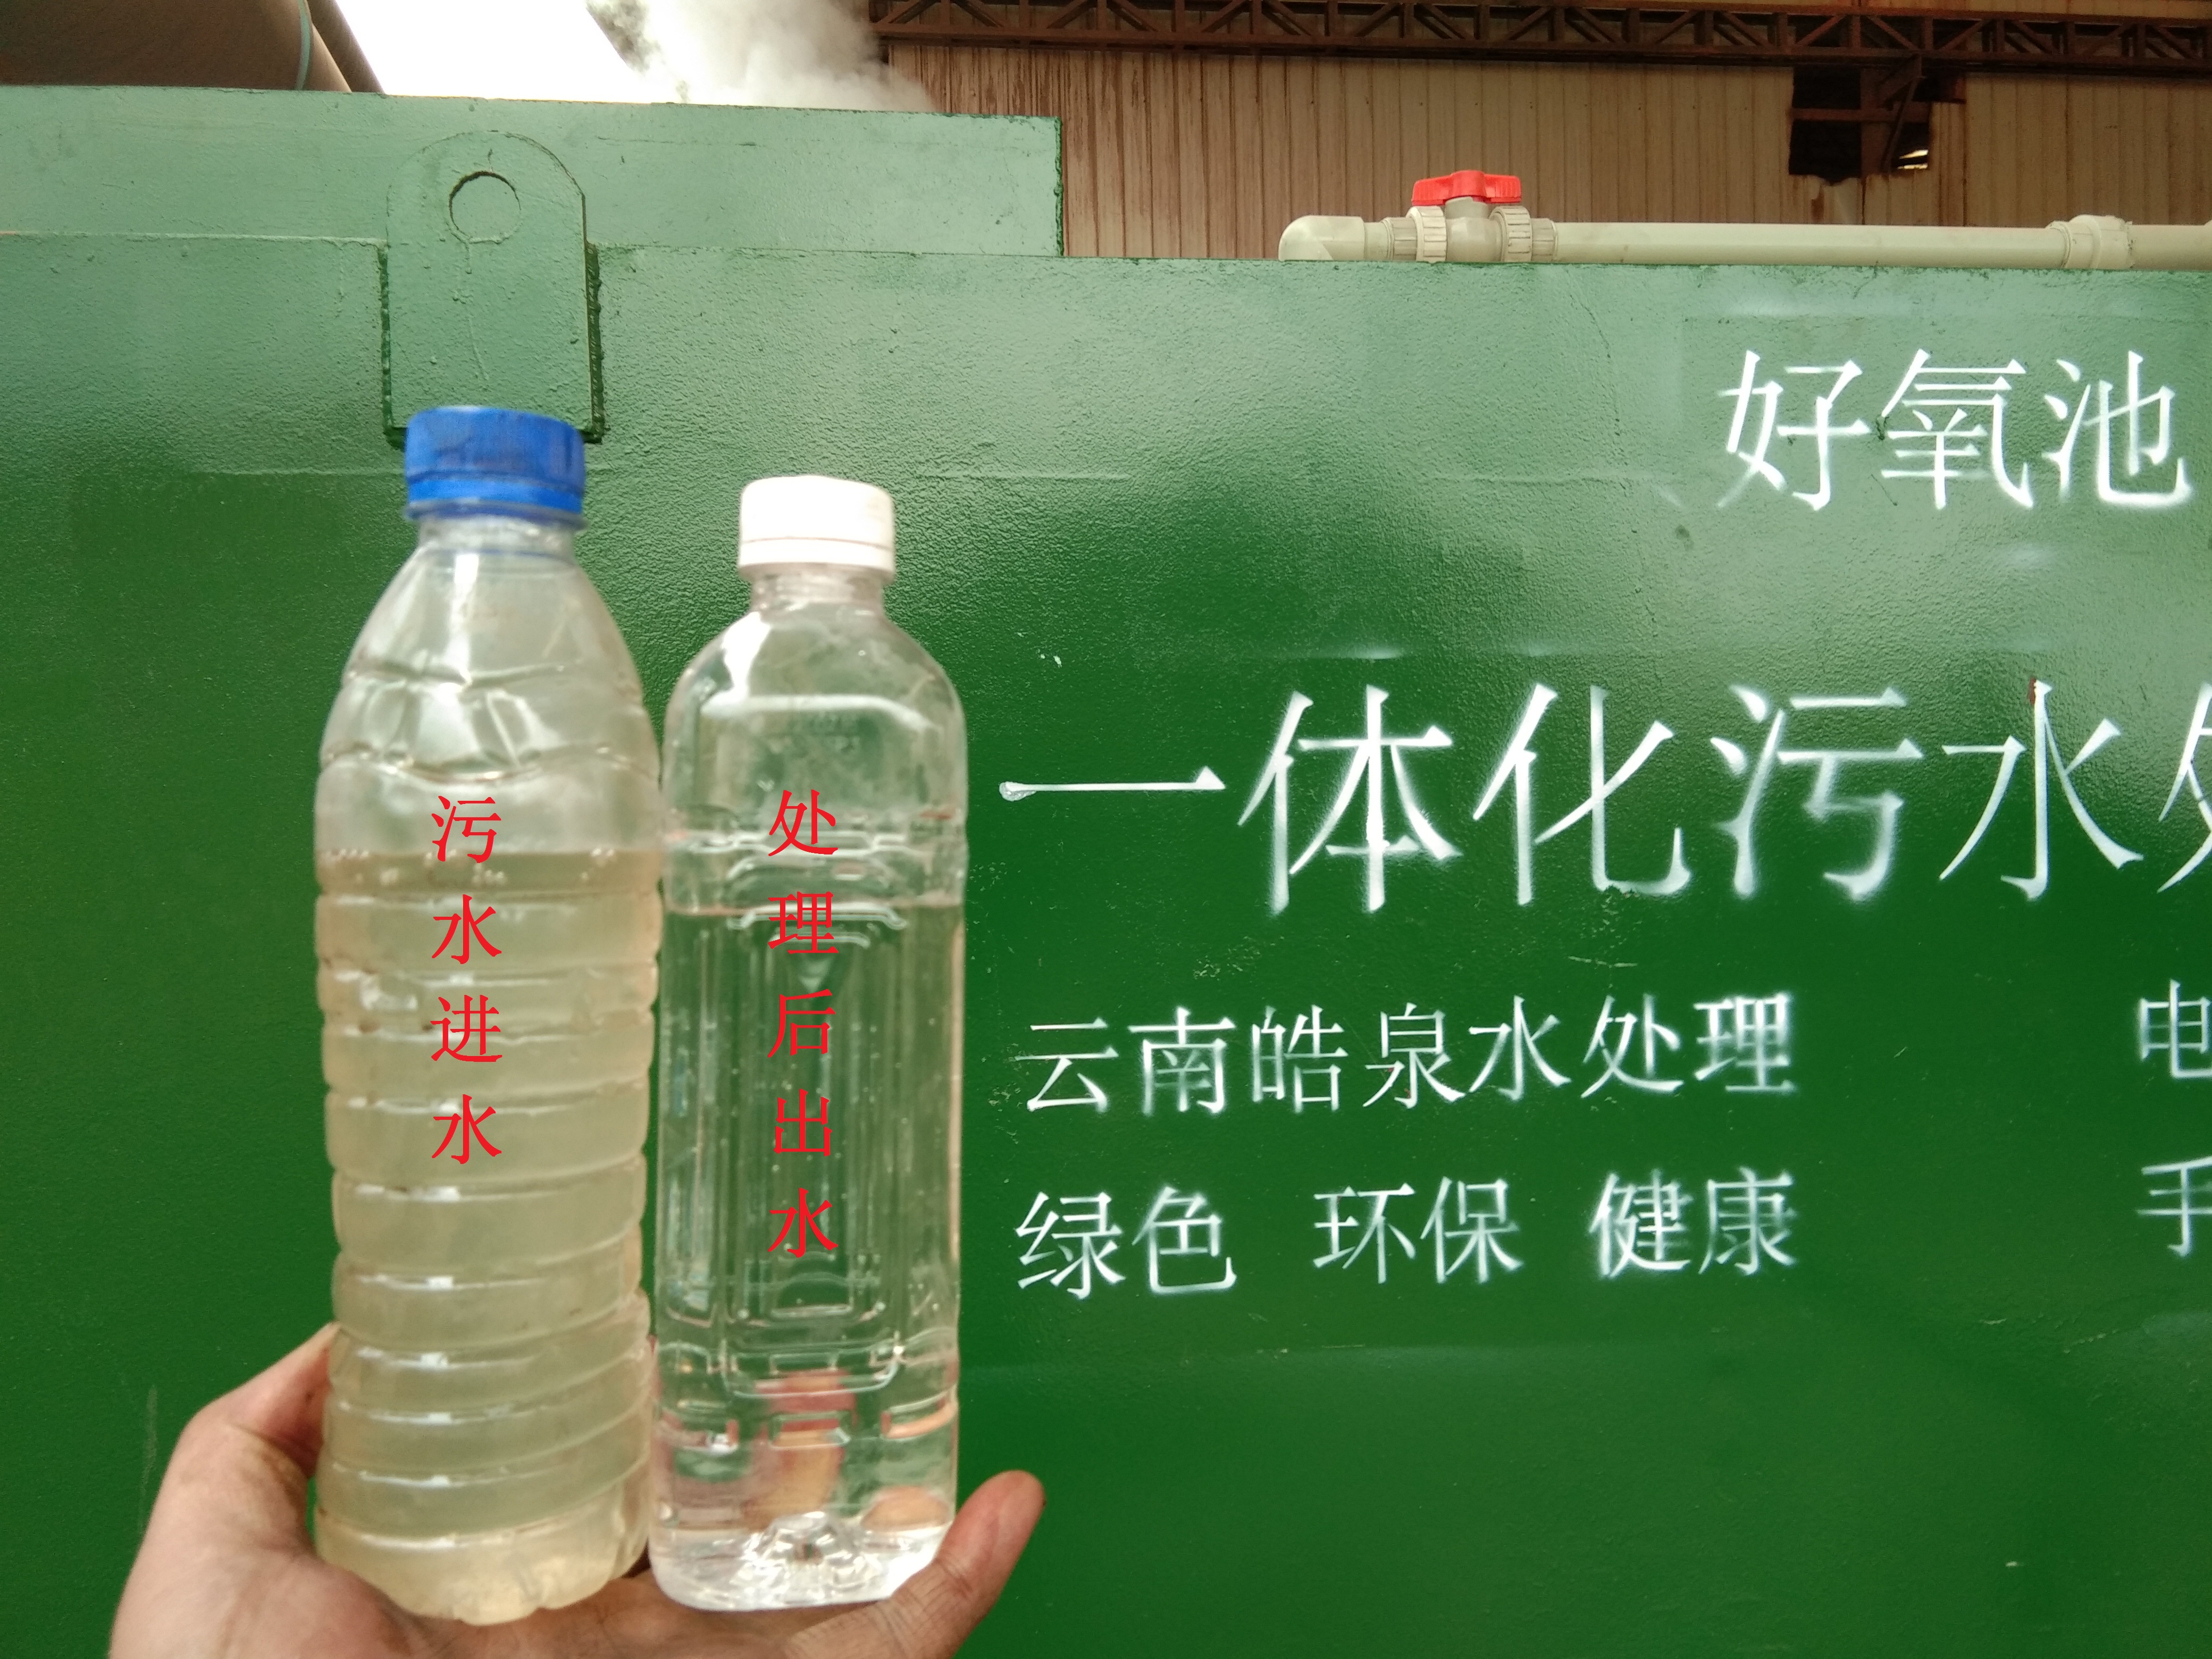 一体化MBR膜污水废水处理设备应用在宾川县康氏灰陶建材有限公司